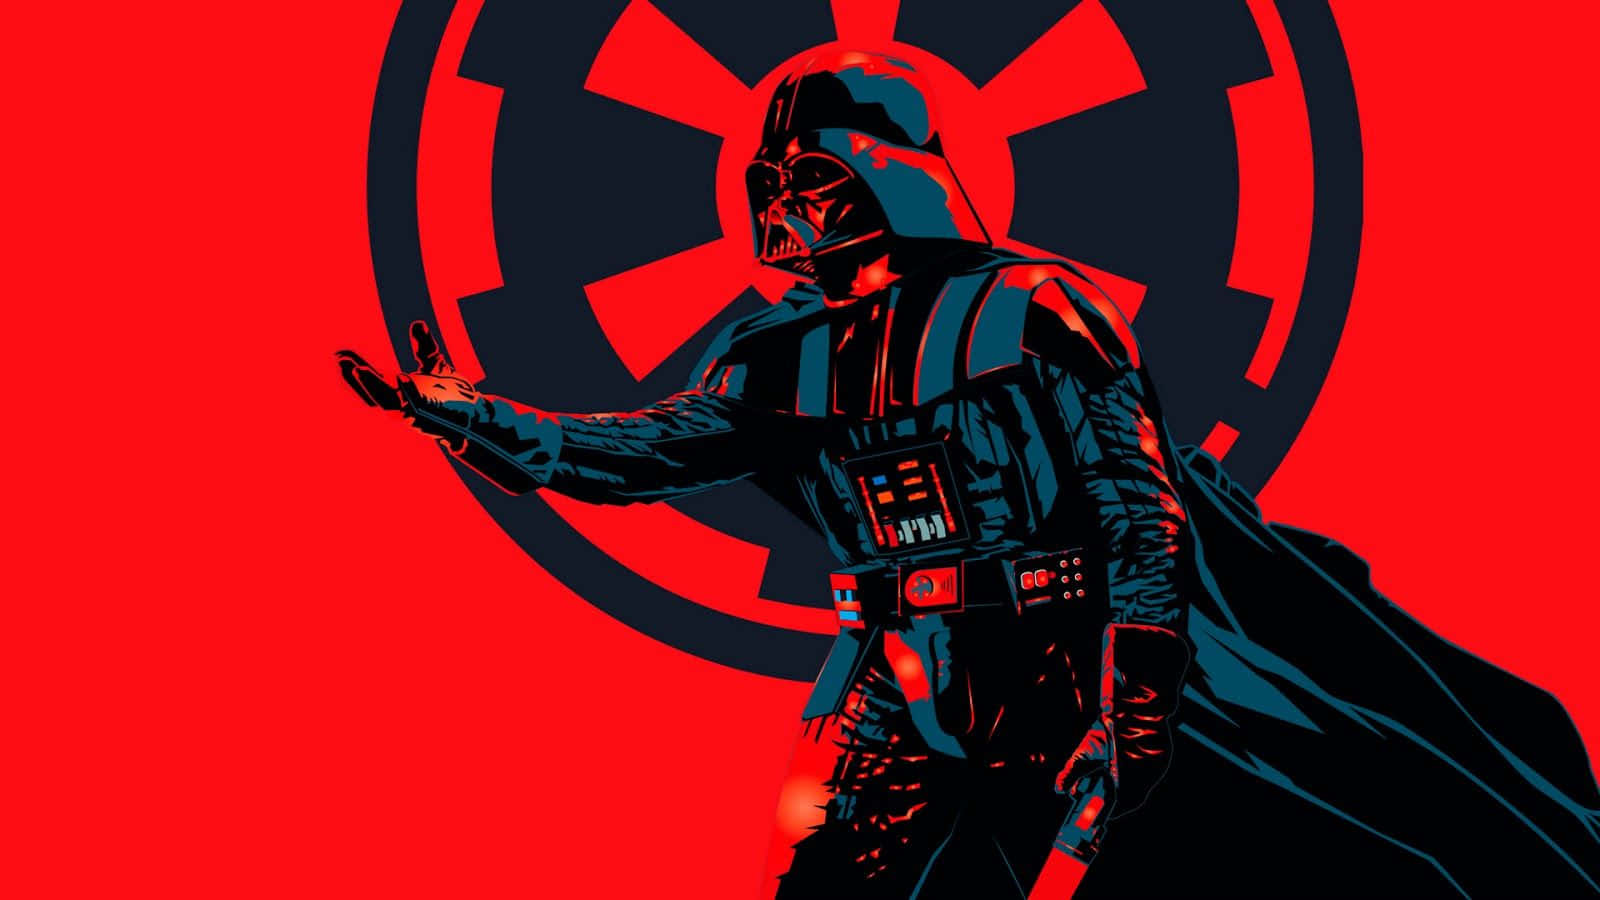 Imágenesde Darth Vader